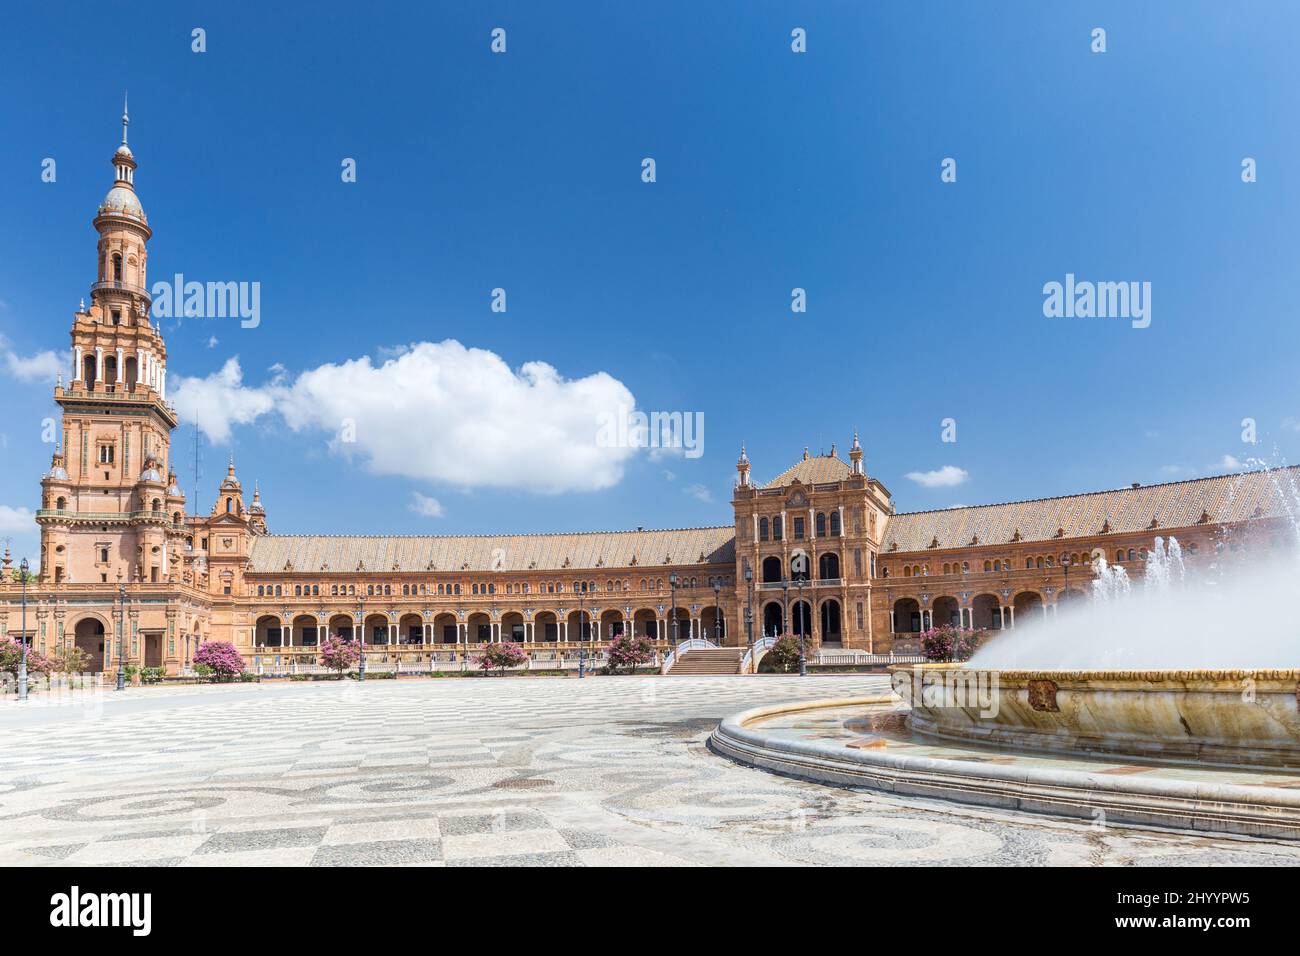 Brunnen auf der Plaza de España. Im Hintergrund schöne Architektur Espana Square. Touristische Attraktion im Zentrum von Sevilla Stockfoto